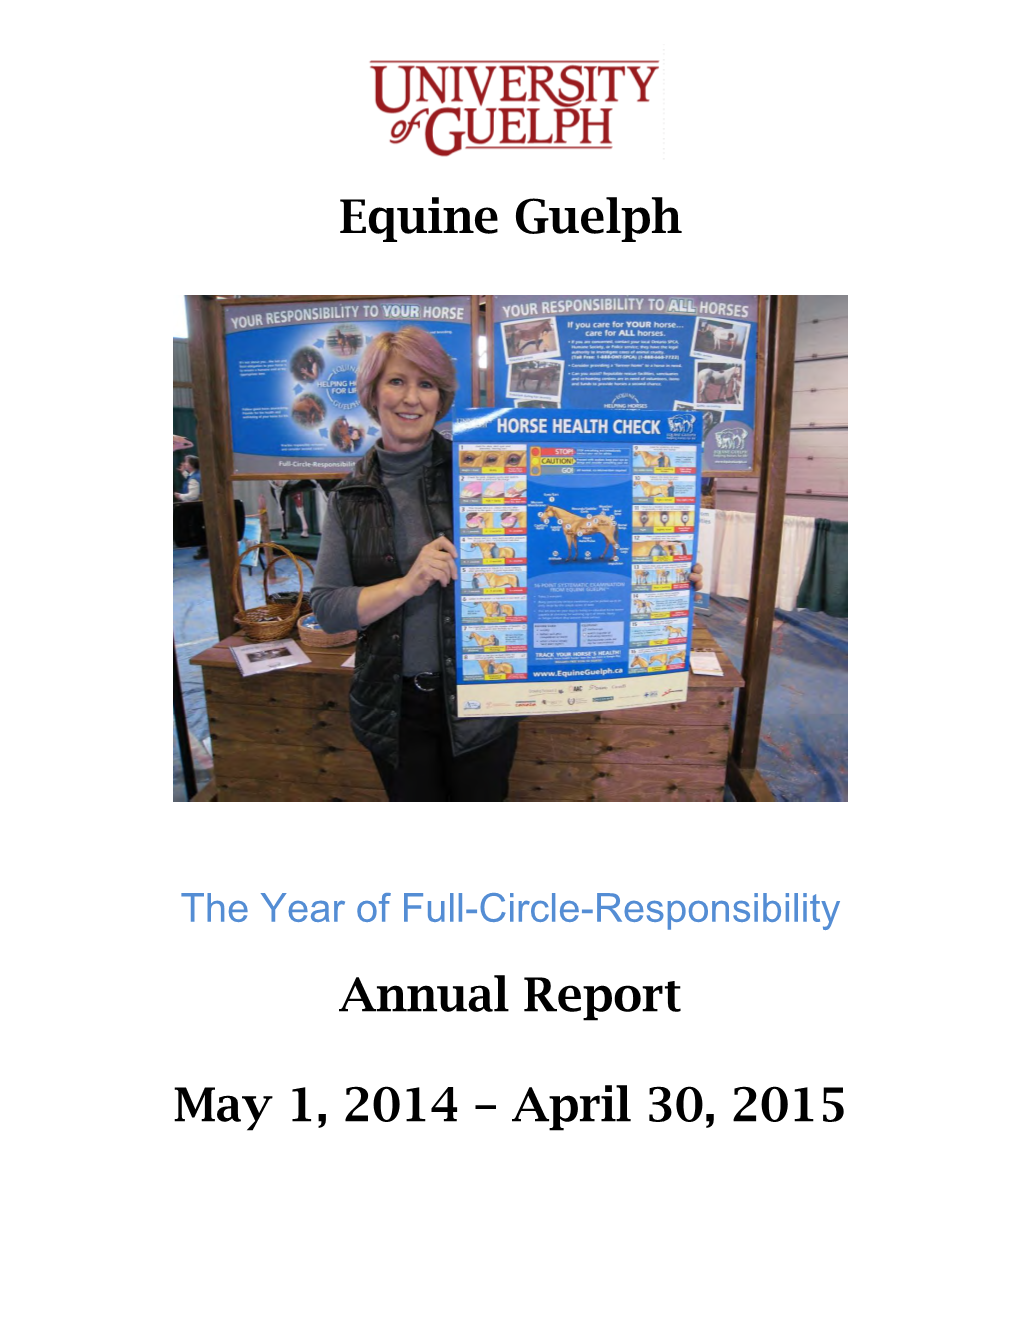 Annual Report May 1, 2014 – April 30, 2015